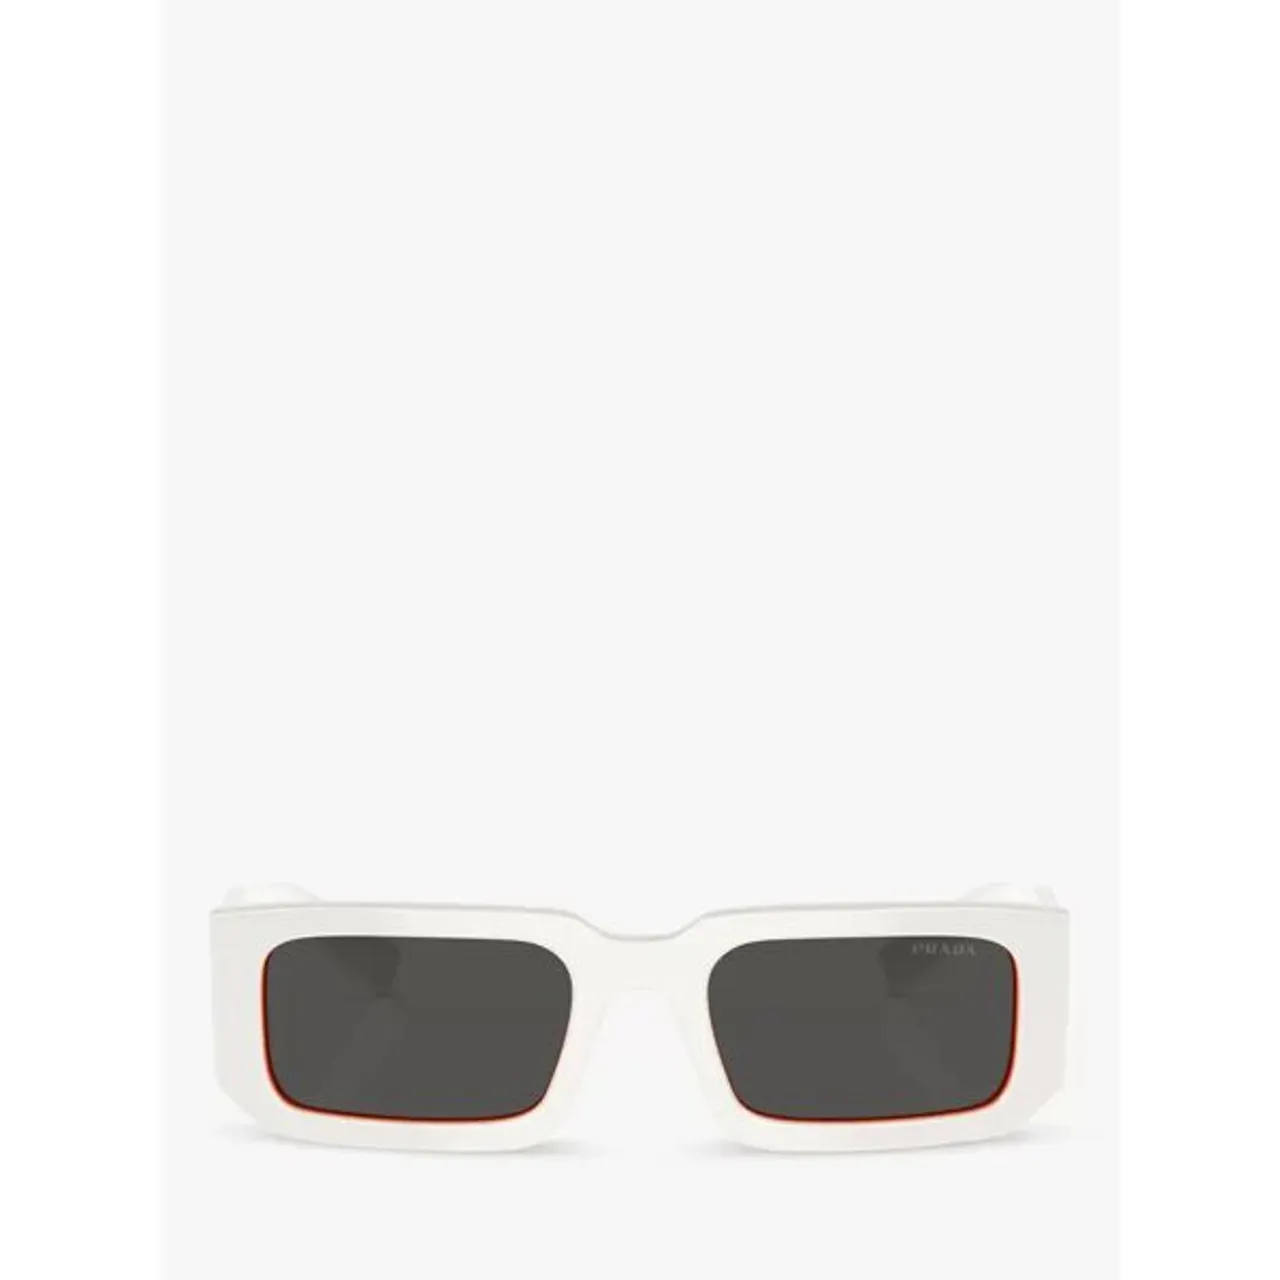 Prada PR 06YS Men's Rectangular Sunglasses - Talc/Orange - Male